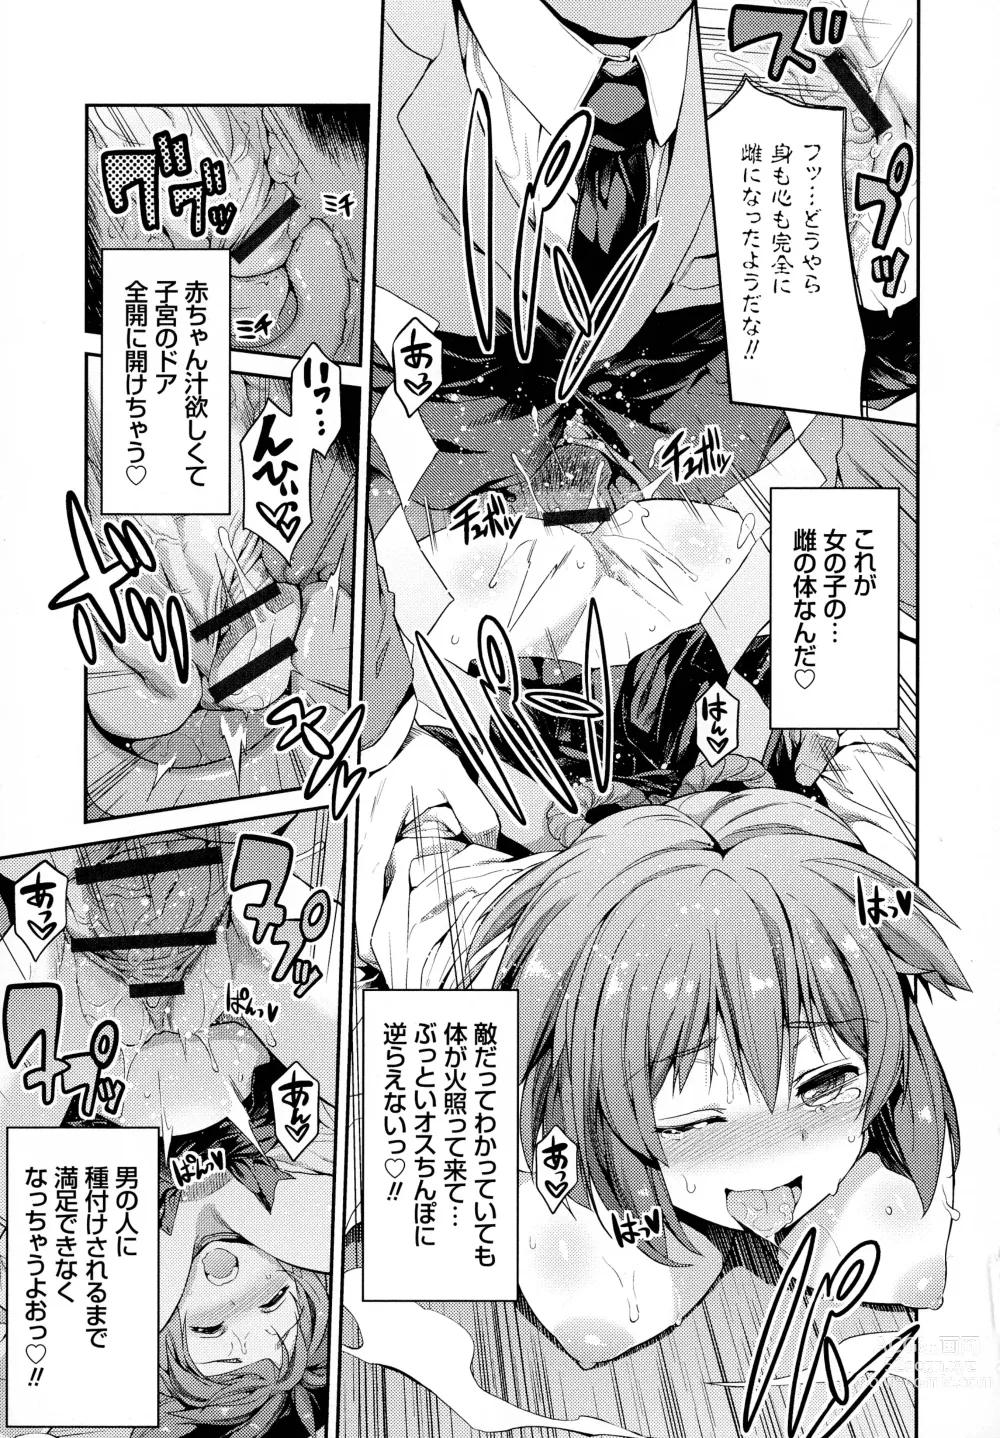 Page 22 of manga Hyoui Koukan